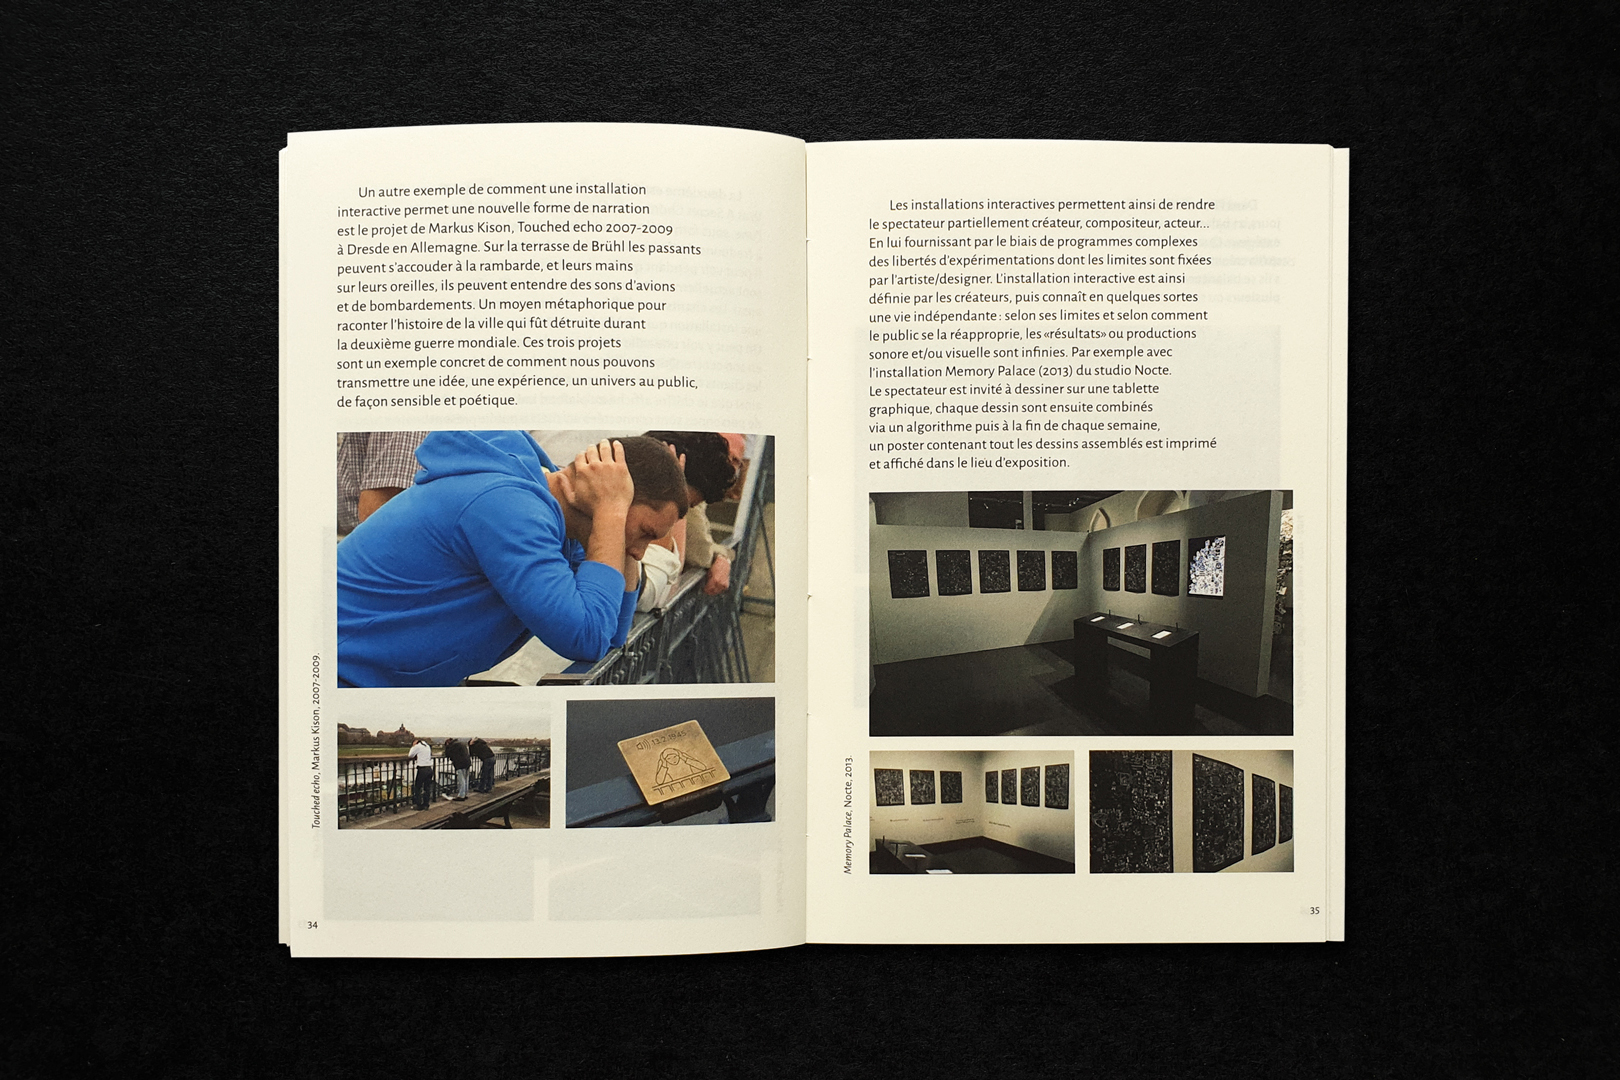 Installations interactives mémoire (master), édition, image 9, 2019, Sybille Clemente, designer graphique.